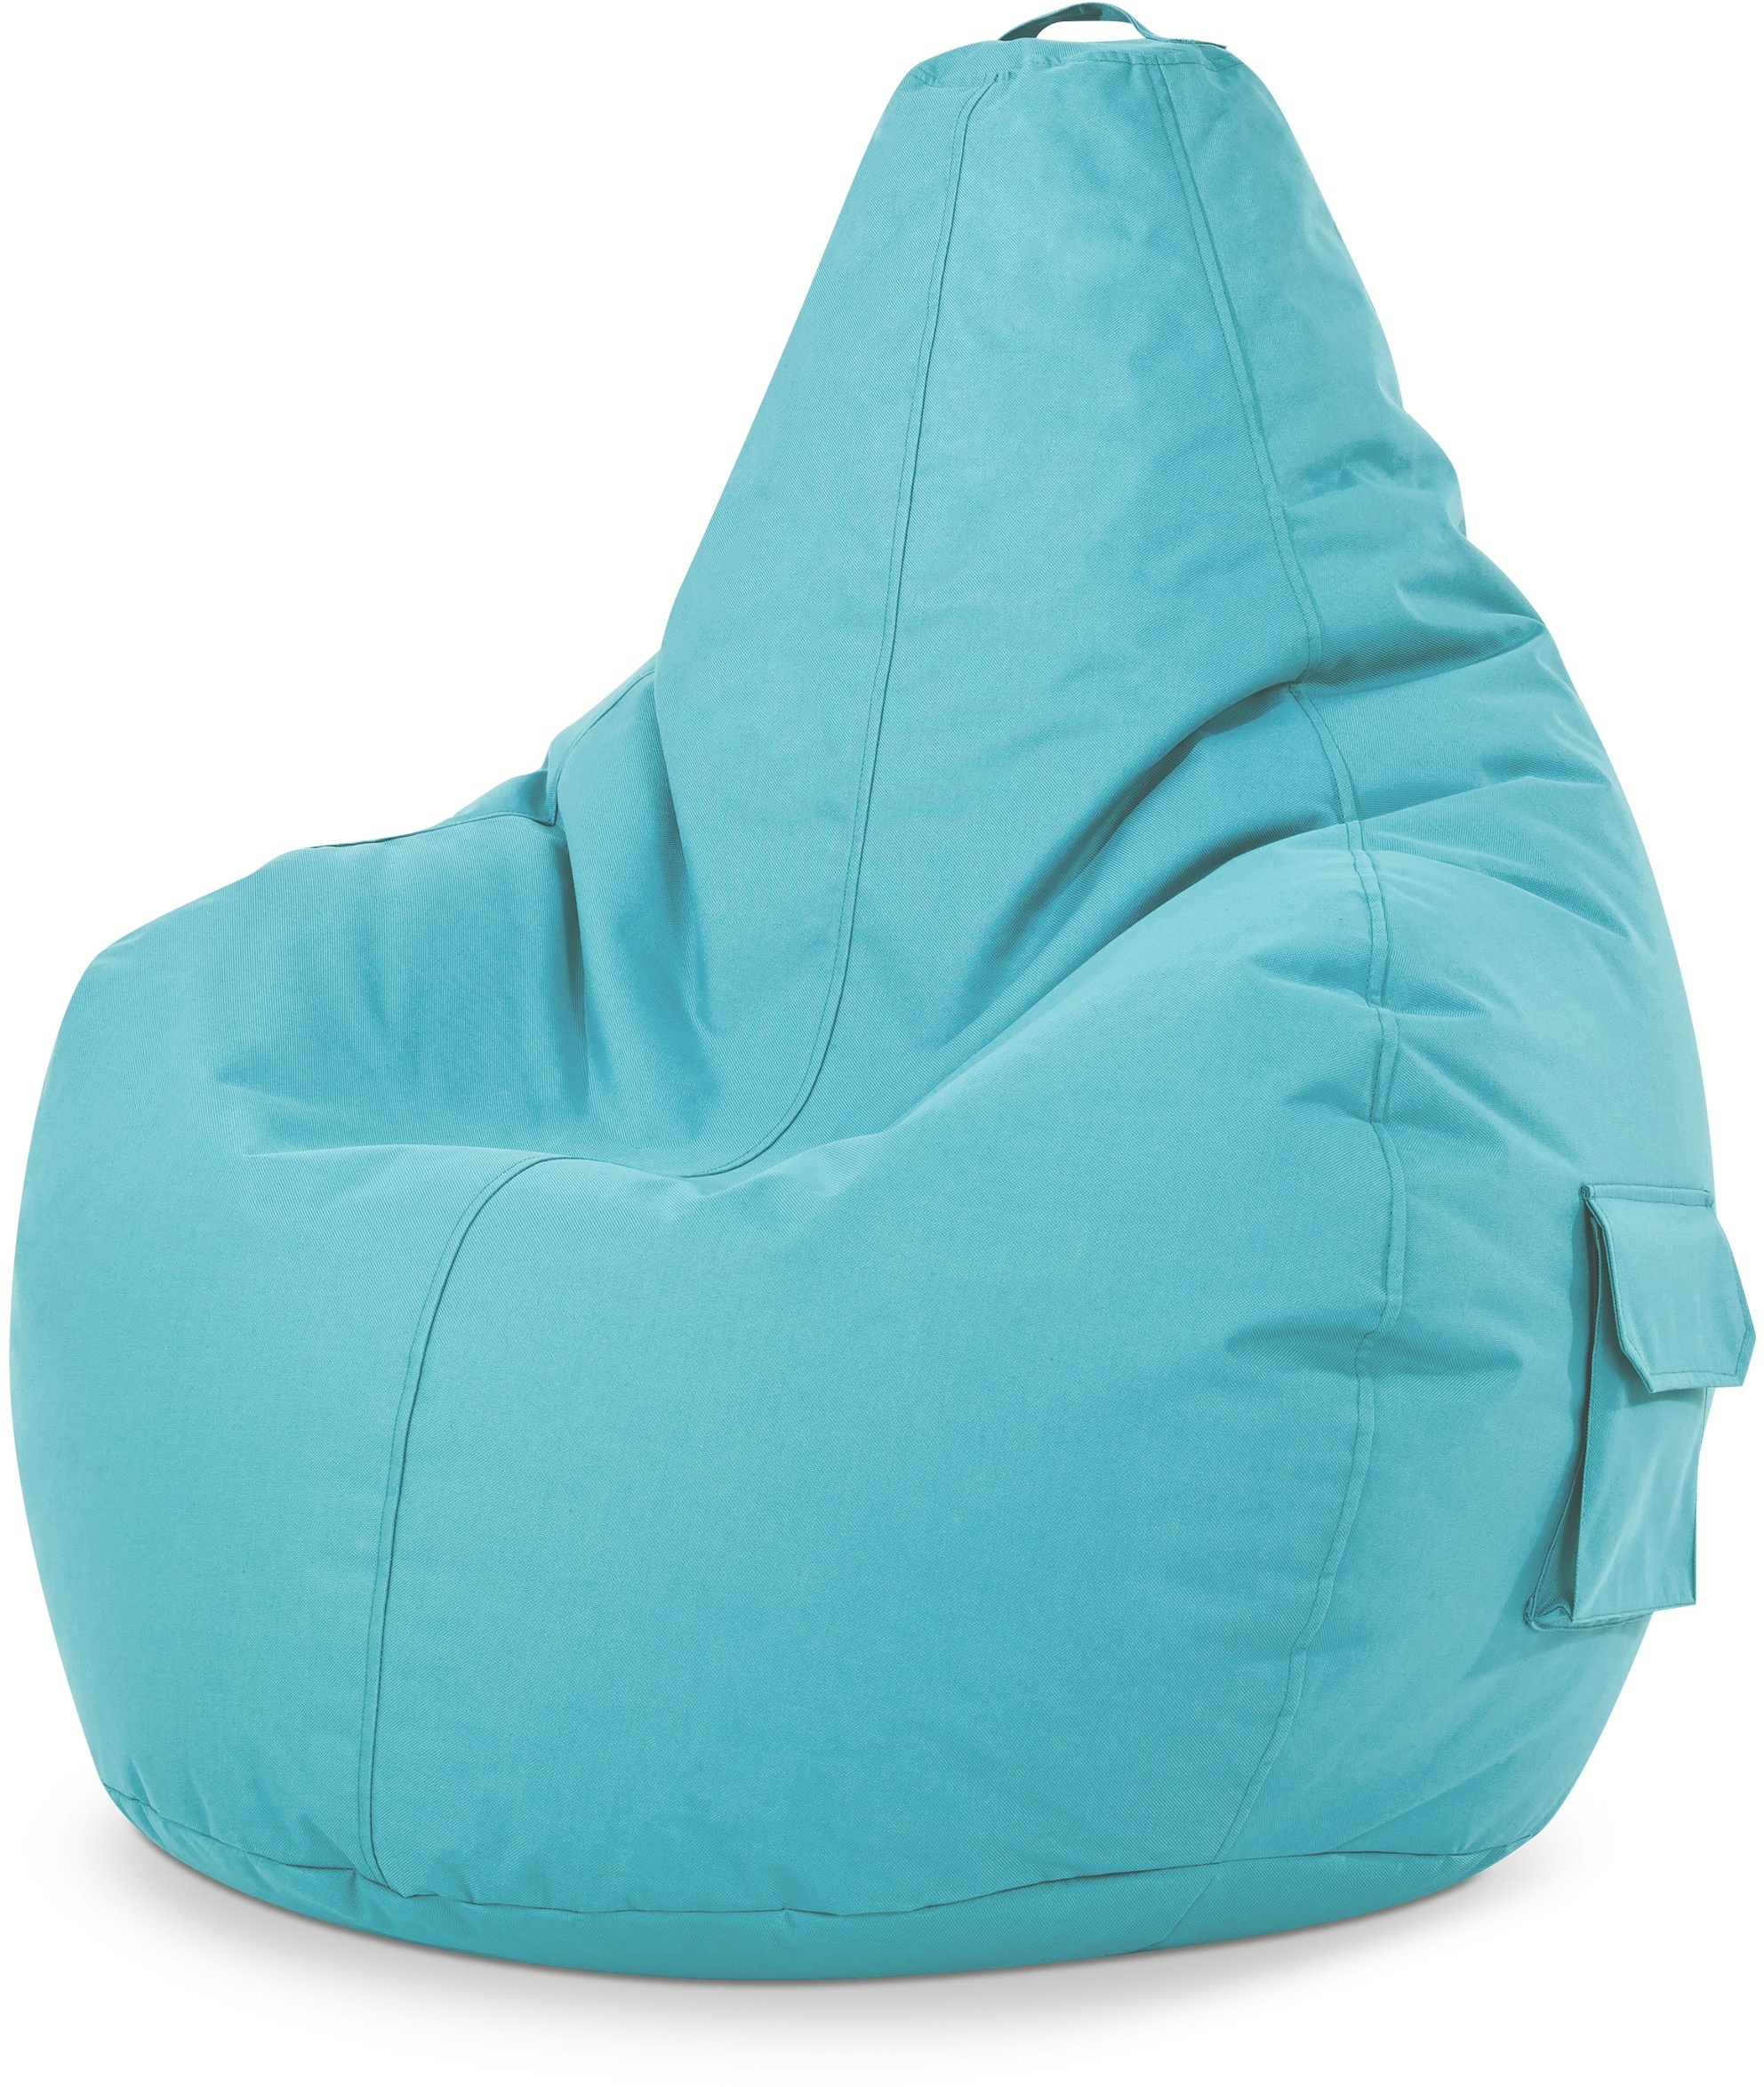 Green Bean© Sitzsack mit Rückenlehne "Cozy" 80x70x90cm - Gaming Chair mit 230L Füllung - Bean Bag Lounge Chair Sitzhocker Türkis